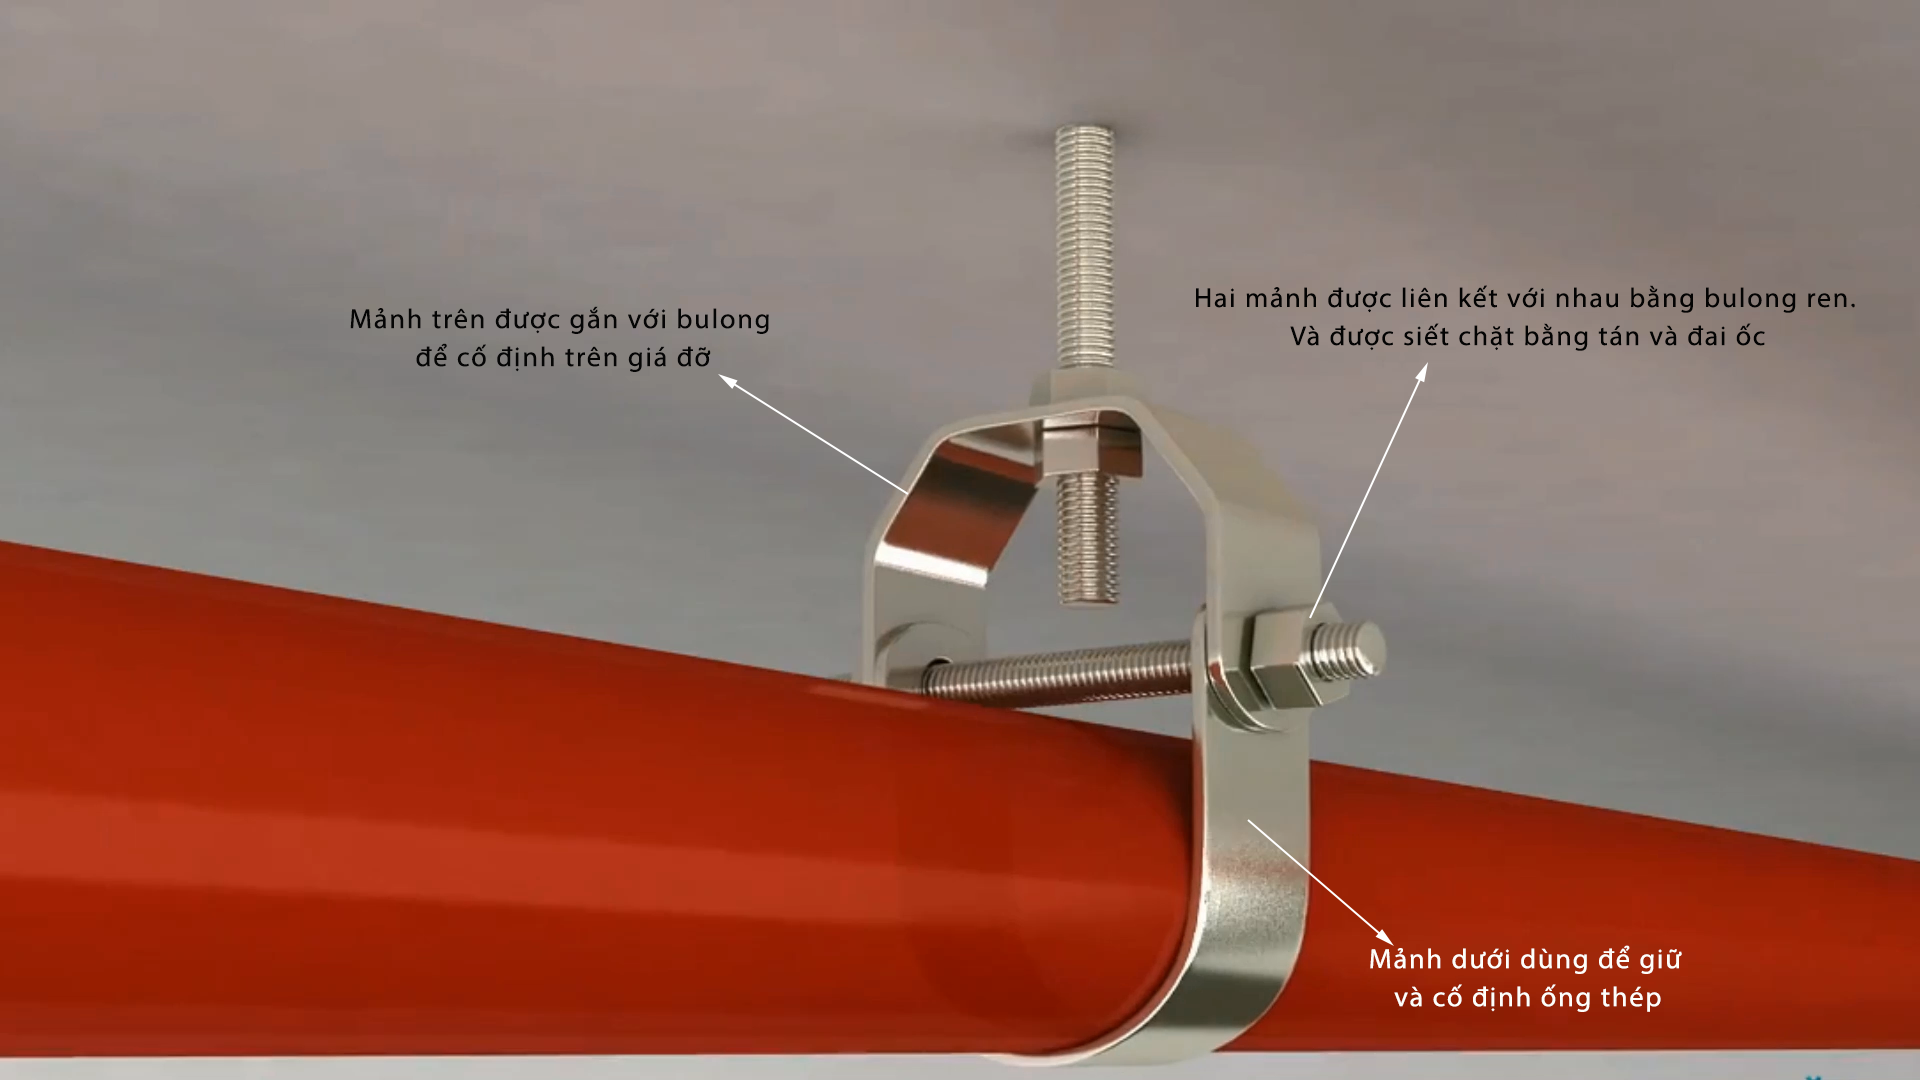 Đôi nét về quang treo cho đường ống chữa cháy